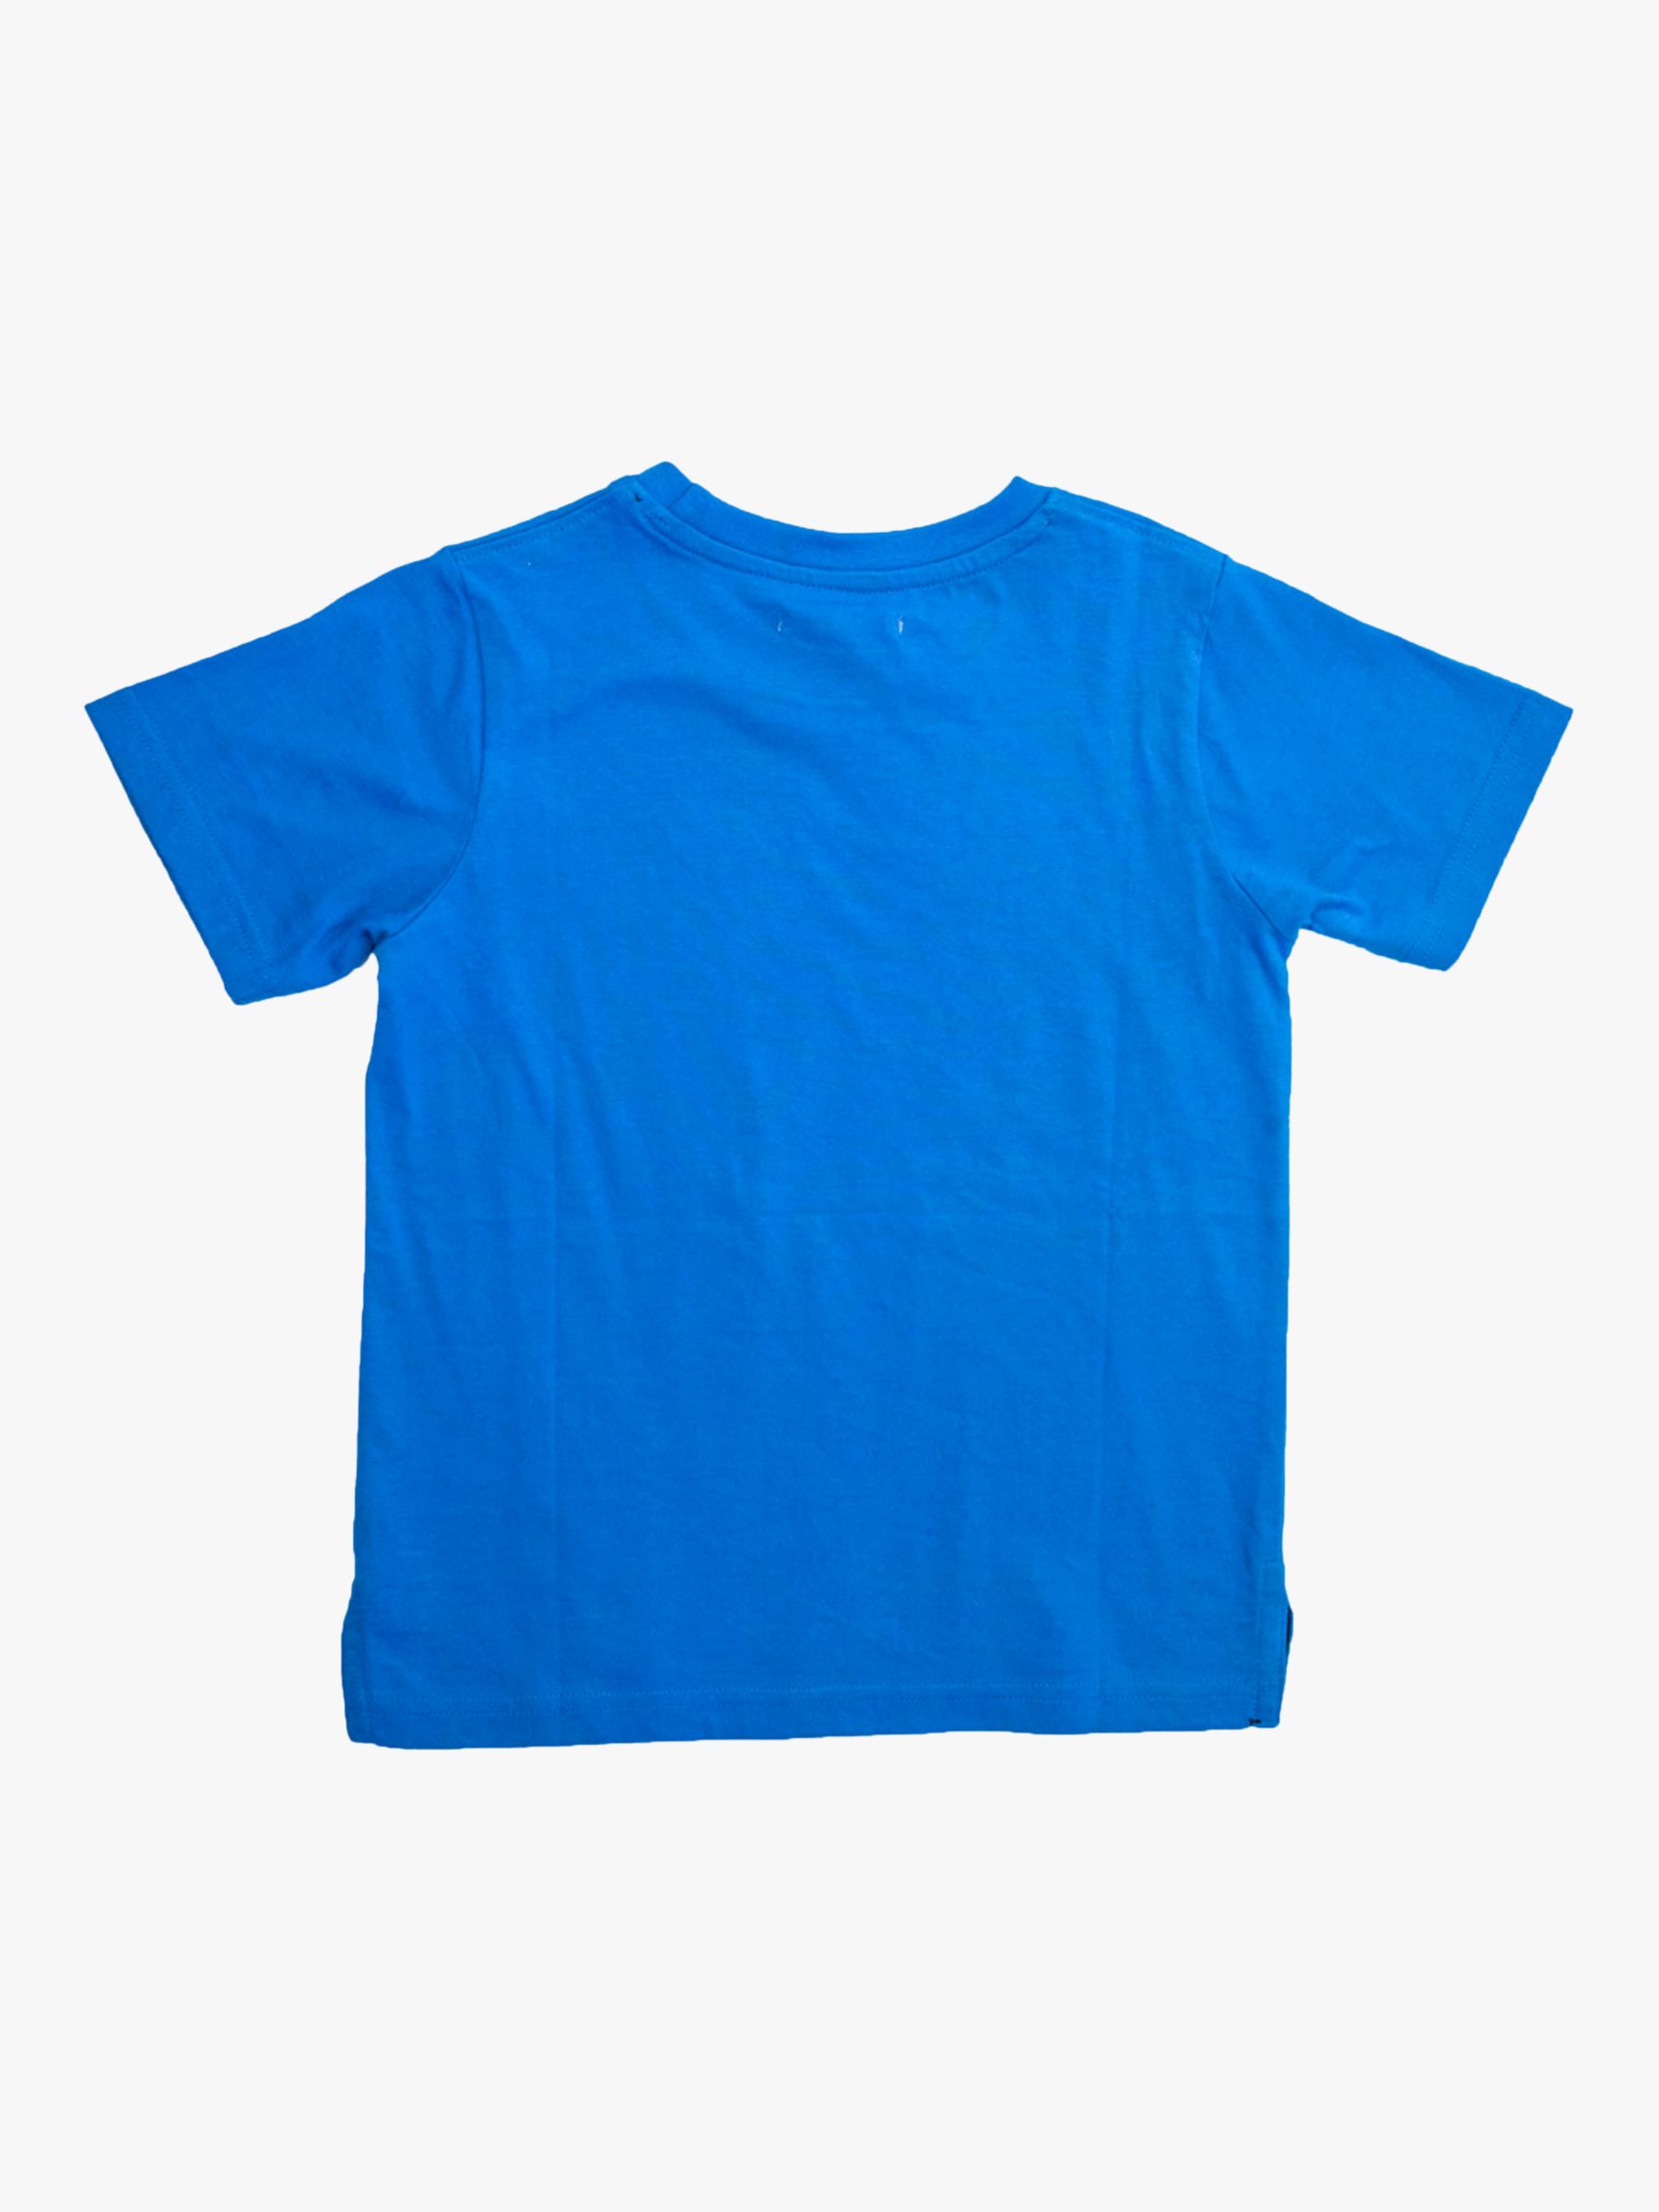 Angel & Rocket Kids' Jayden Smiley Face T-Shirt, Blue at John Lewis ...